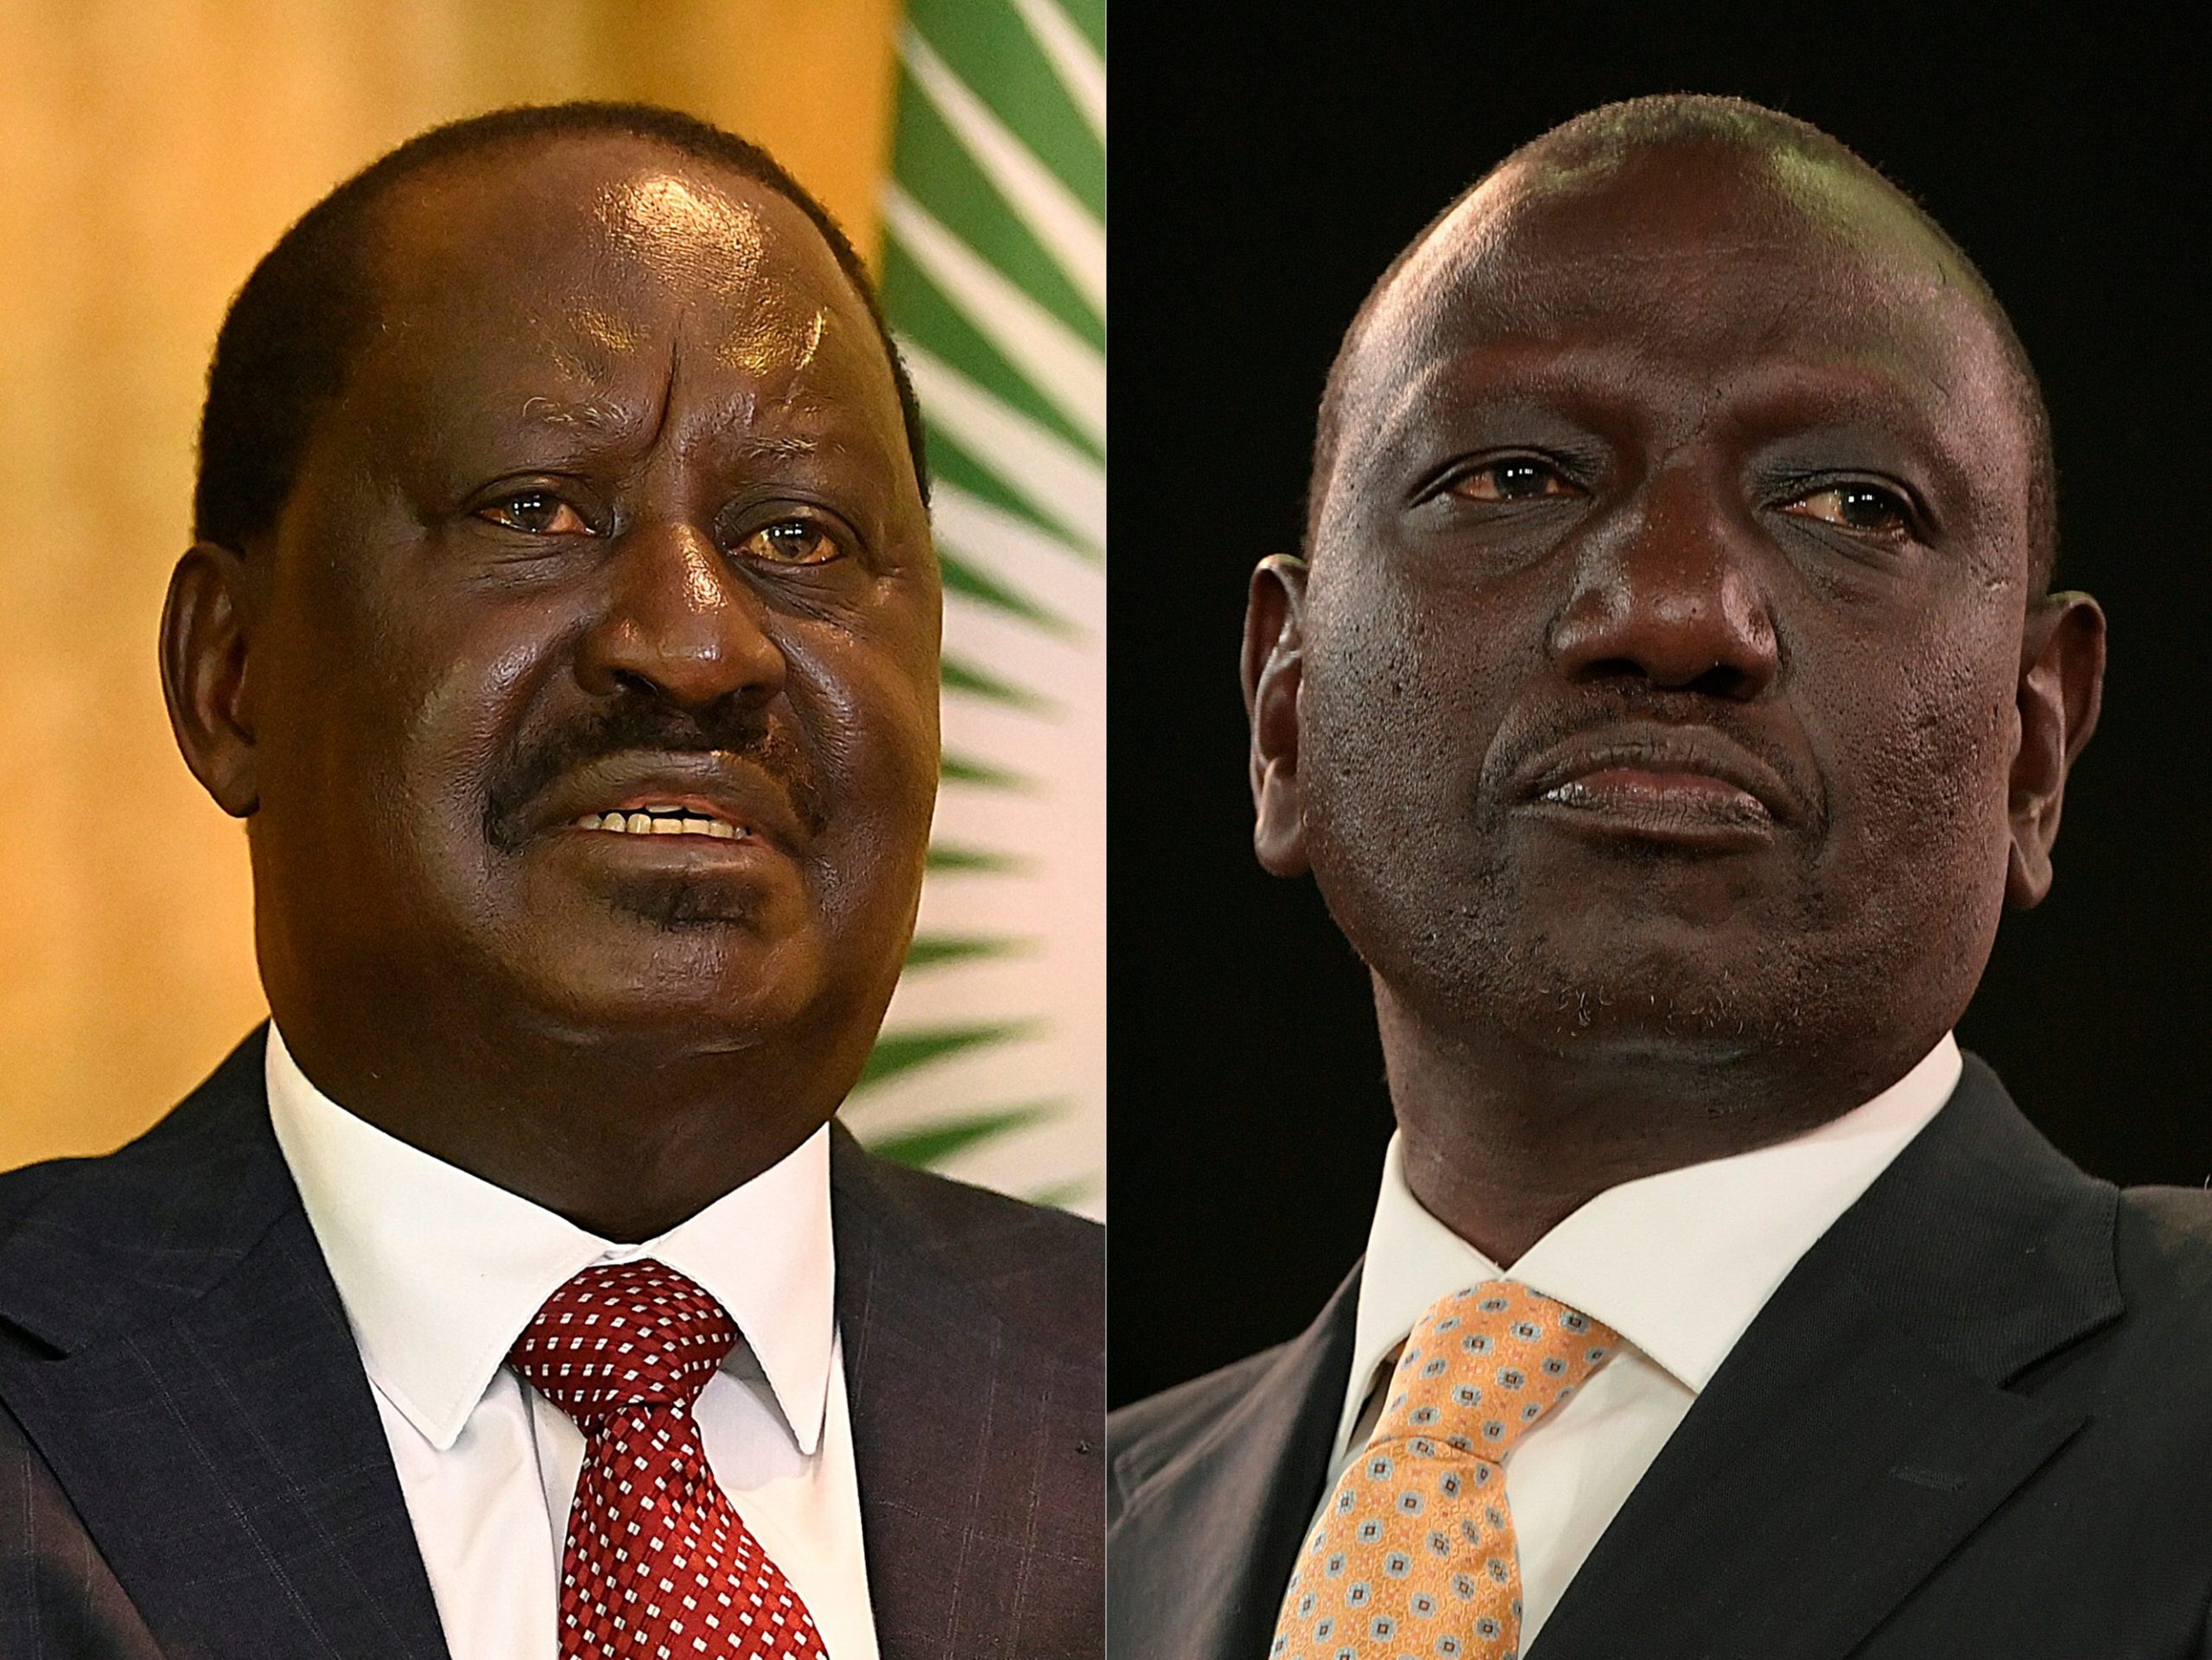 Kenya’s govt, opposition agree to talks after protests